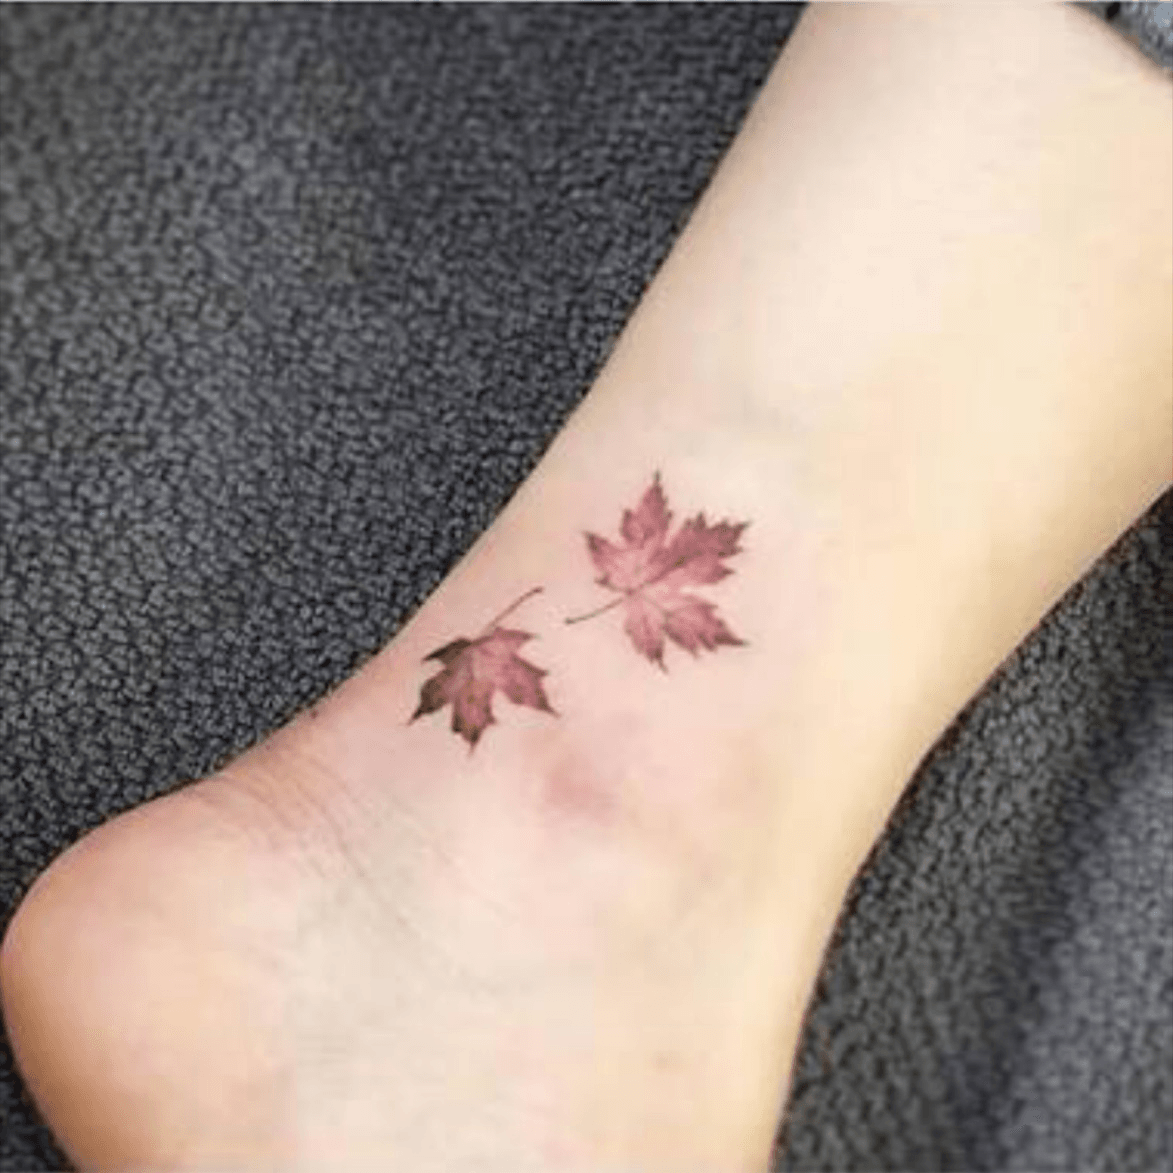 Tattoo uploaded by Skye Dunwell • My hopeful next tattoo #autumn #autmnleaf #tattoo #smalltattoo #realism • Tattoodo